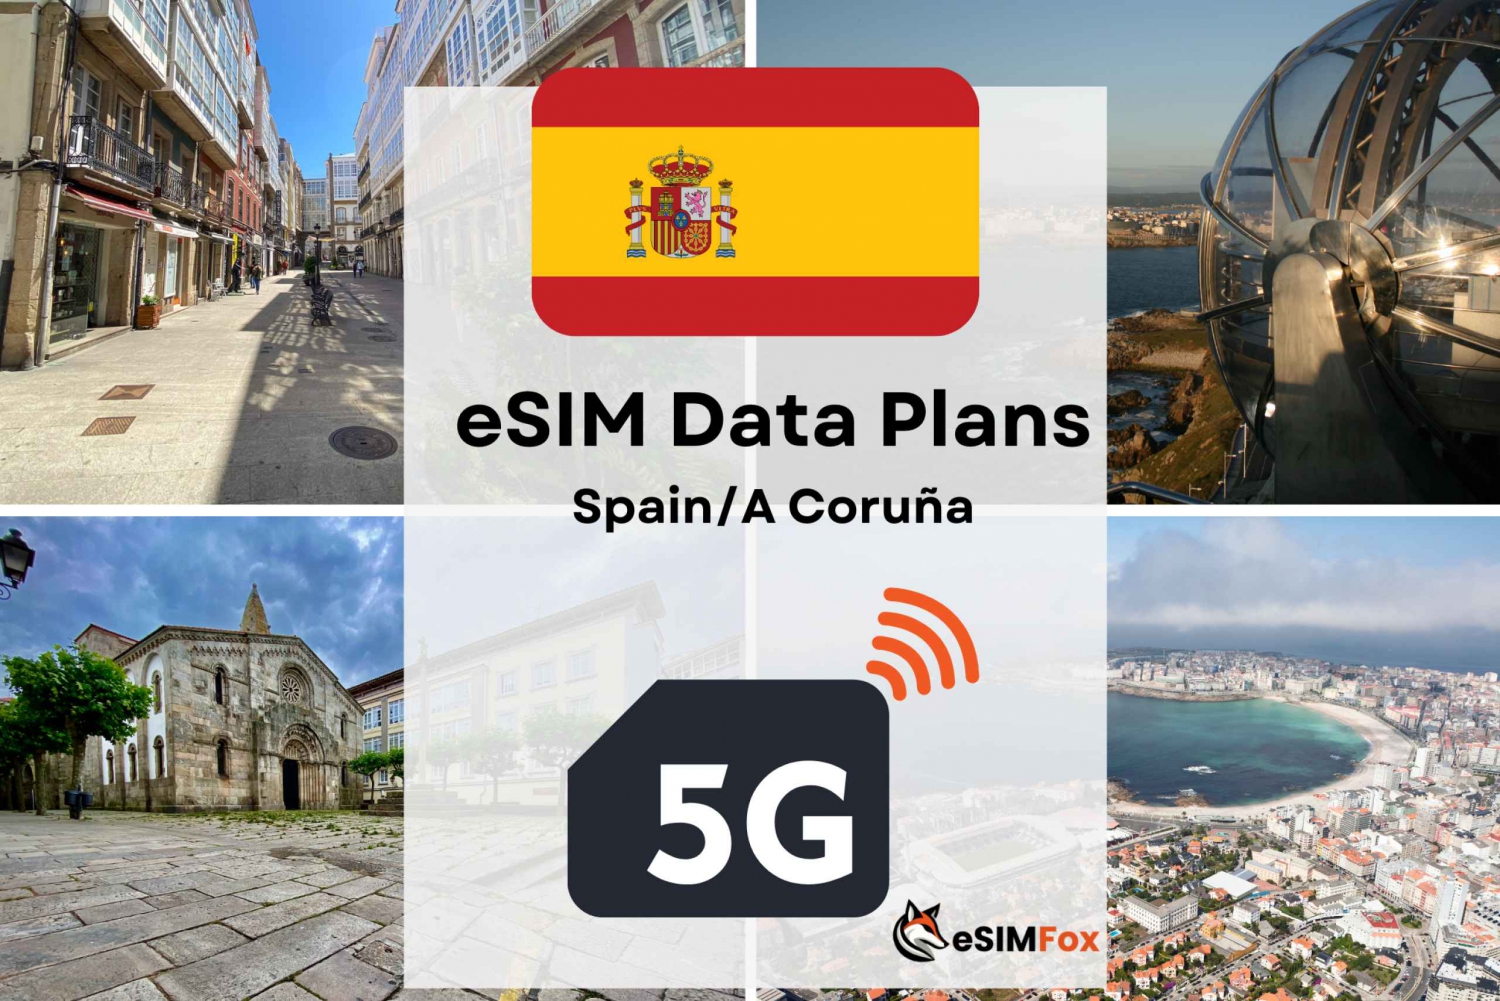 A Coruna: Internetowy plan danych eSIM dla Hiszpanii 4G/5G